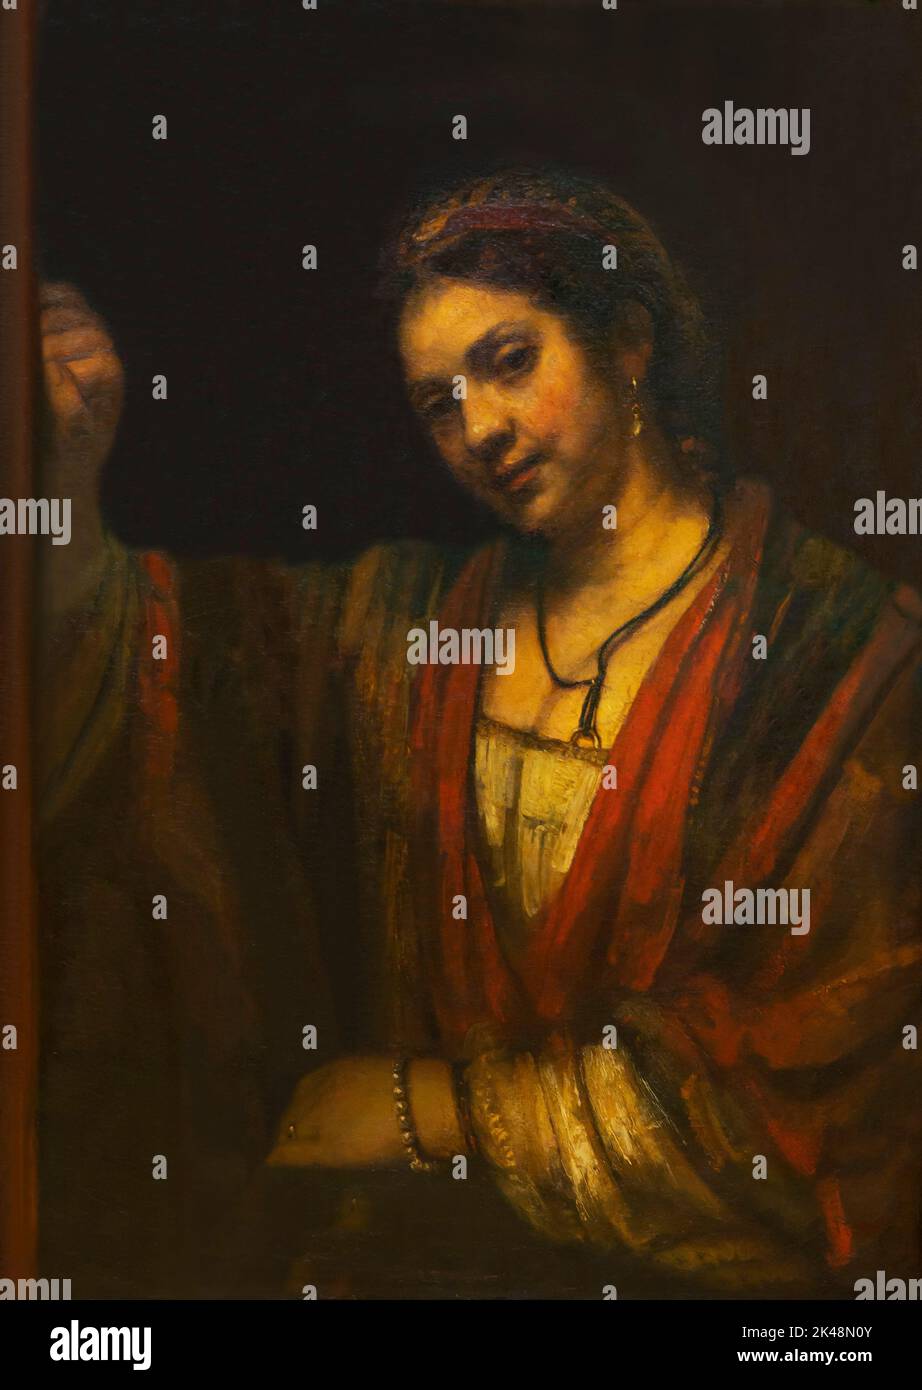 Une jeune femme penchée contre une porte, Hendrickje Stoffels, Rembrandt, vers 1656-1657, Gemaldegalerie, Berlin, Allemagne, Europe Banque D'Images